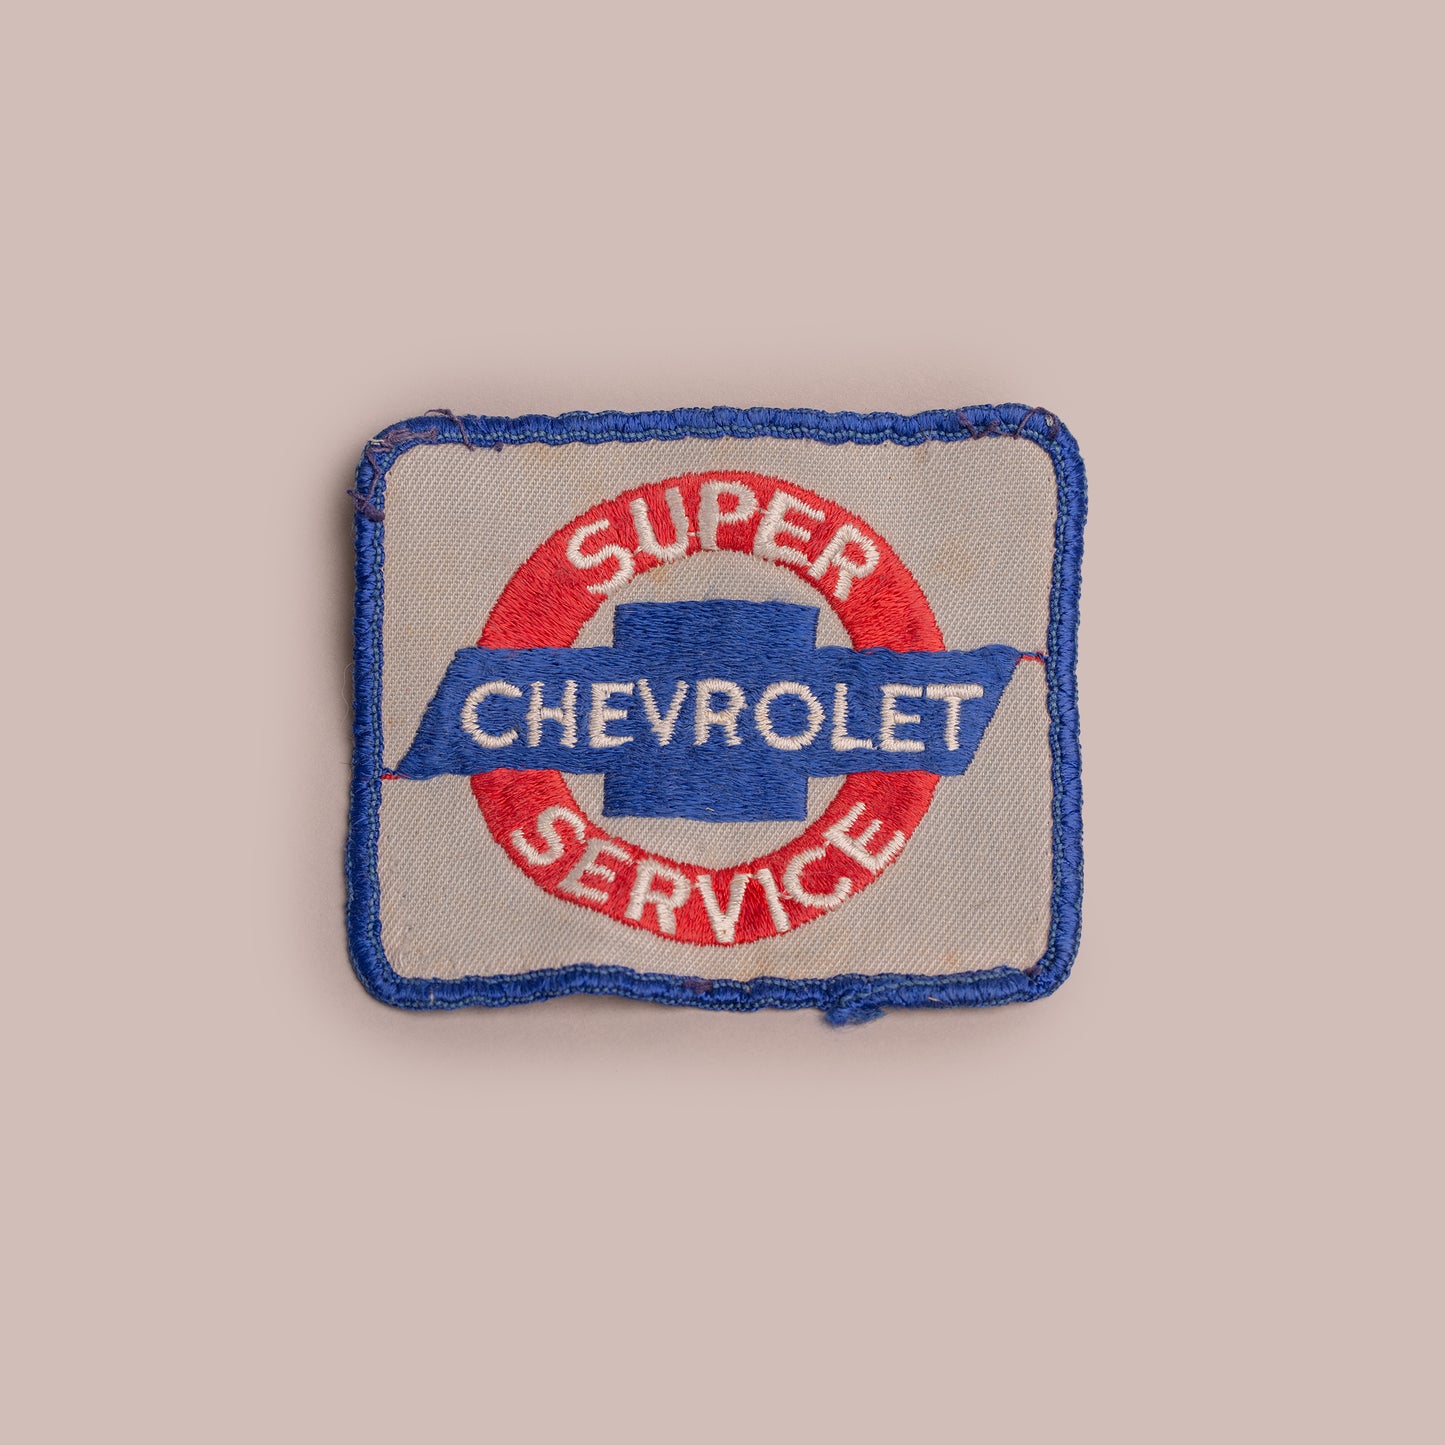 Vintage Patch - Super Chevrolet Service